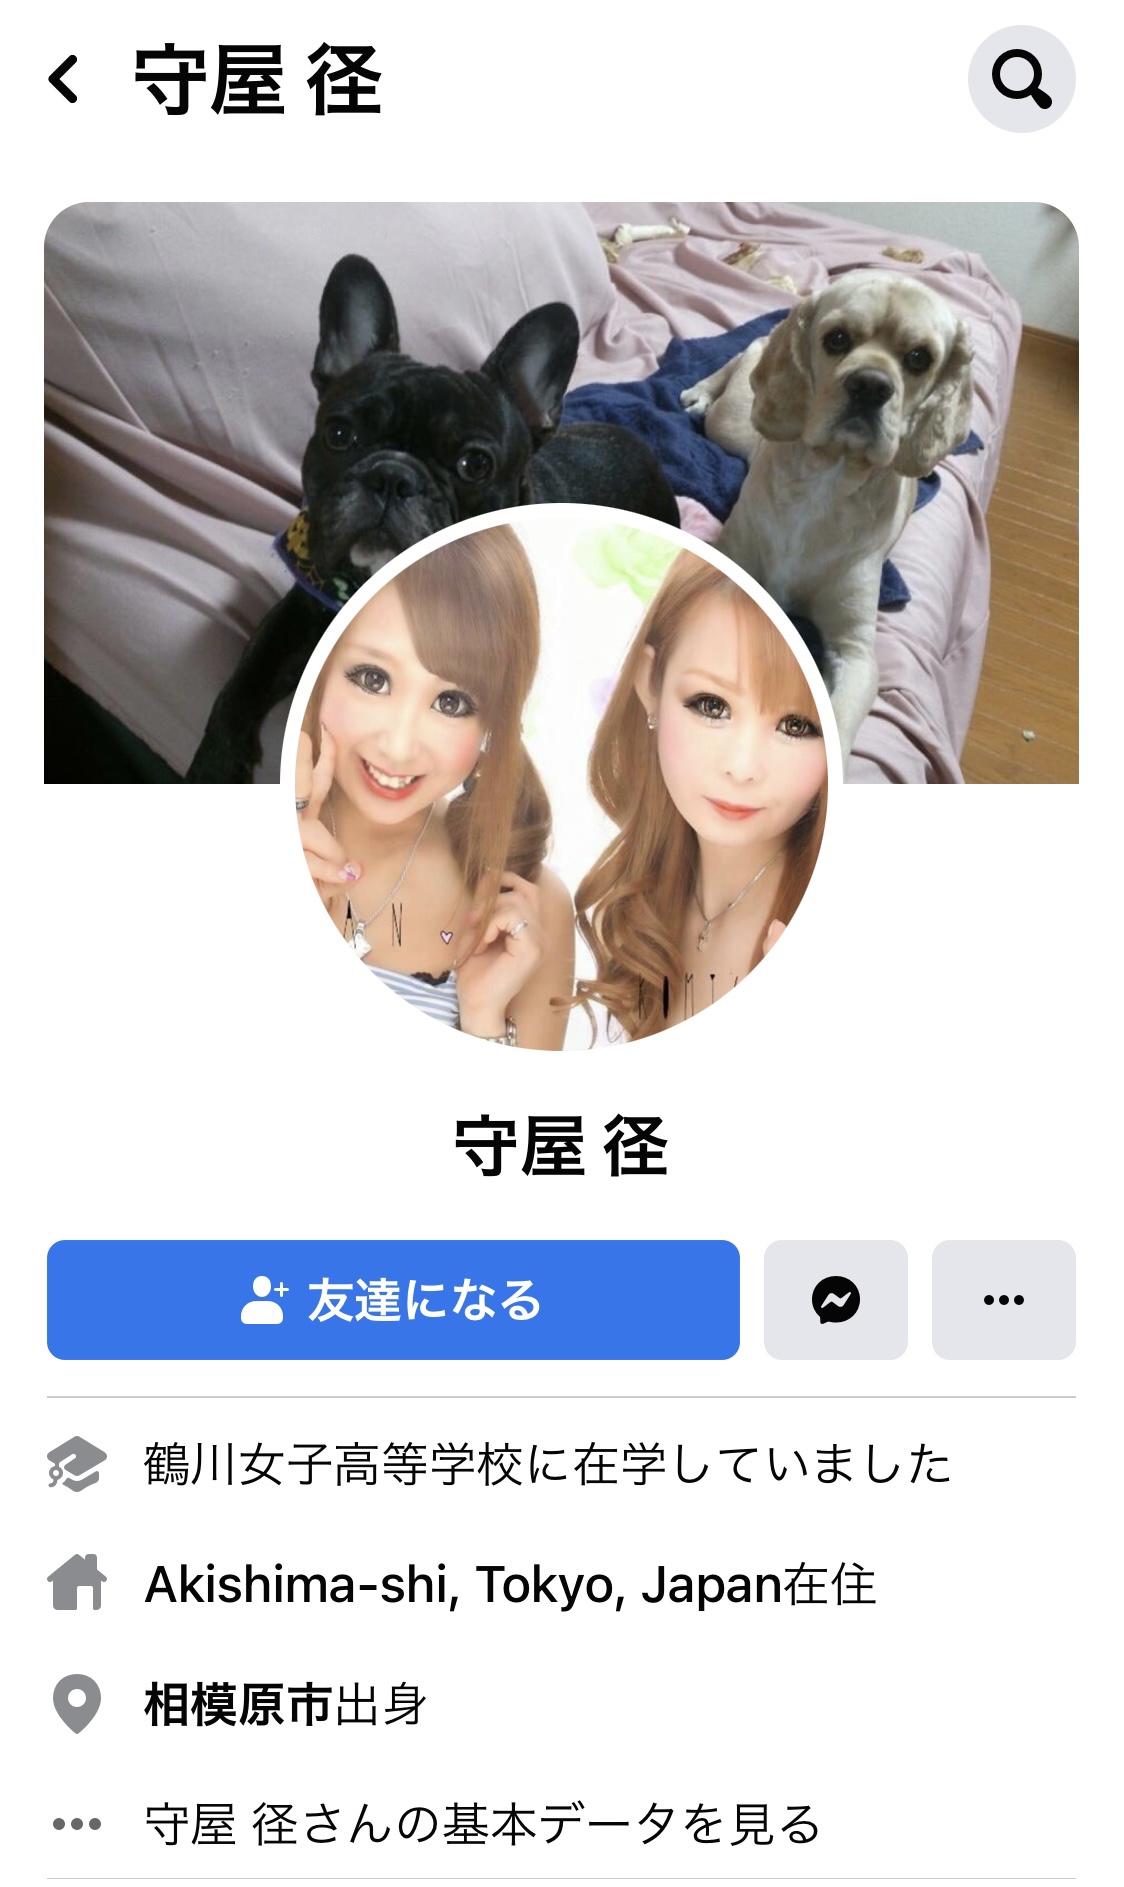 立川ホテル刺傷事件 どこのホテル 犯人は誰 名前は 顔画像 東京立川市 テツブログ